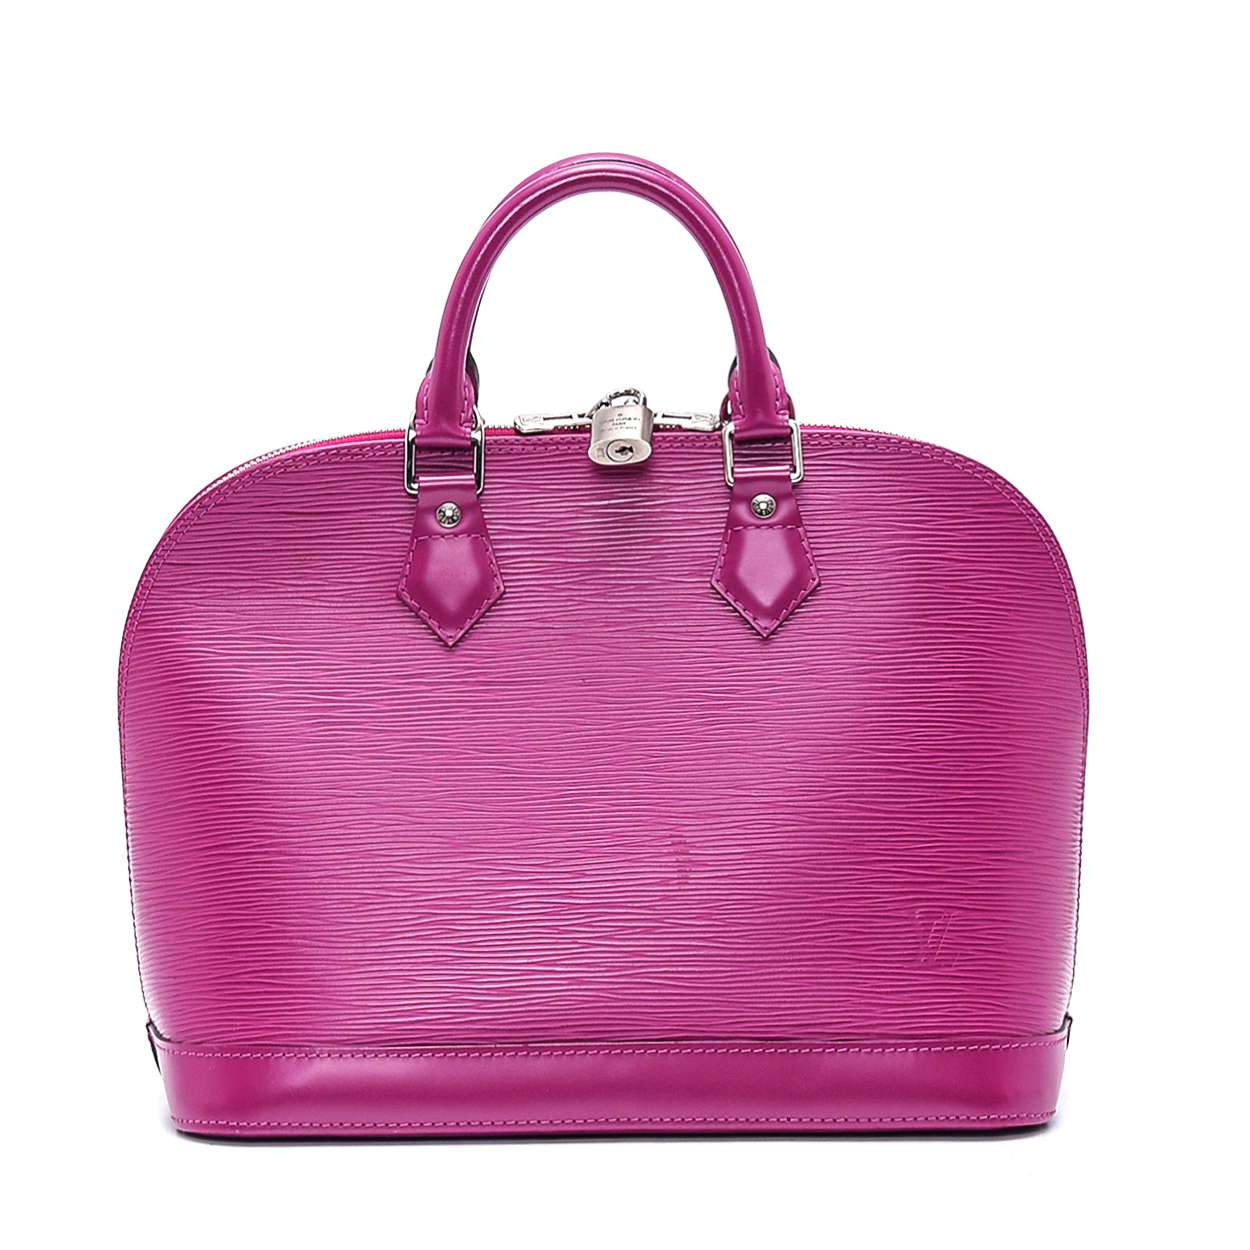 Louis Vuitton - Fuchsia Epi Leather Alma Pm Tote Bag